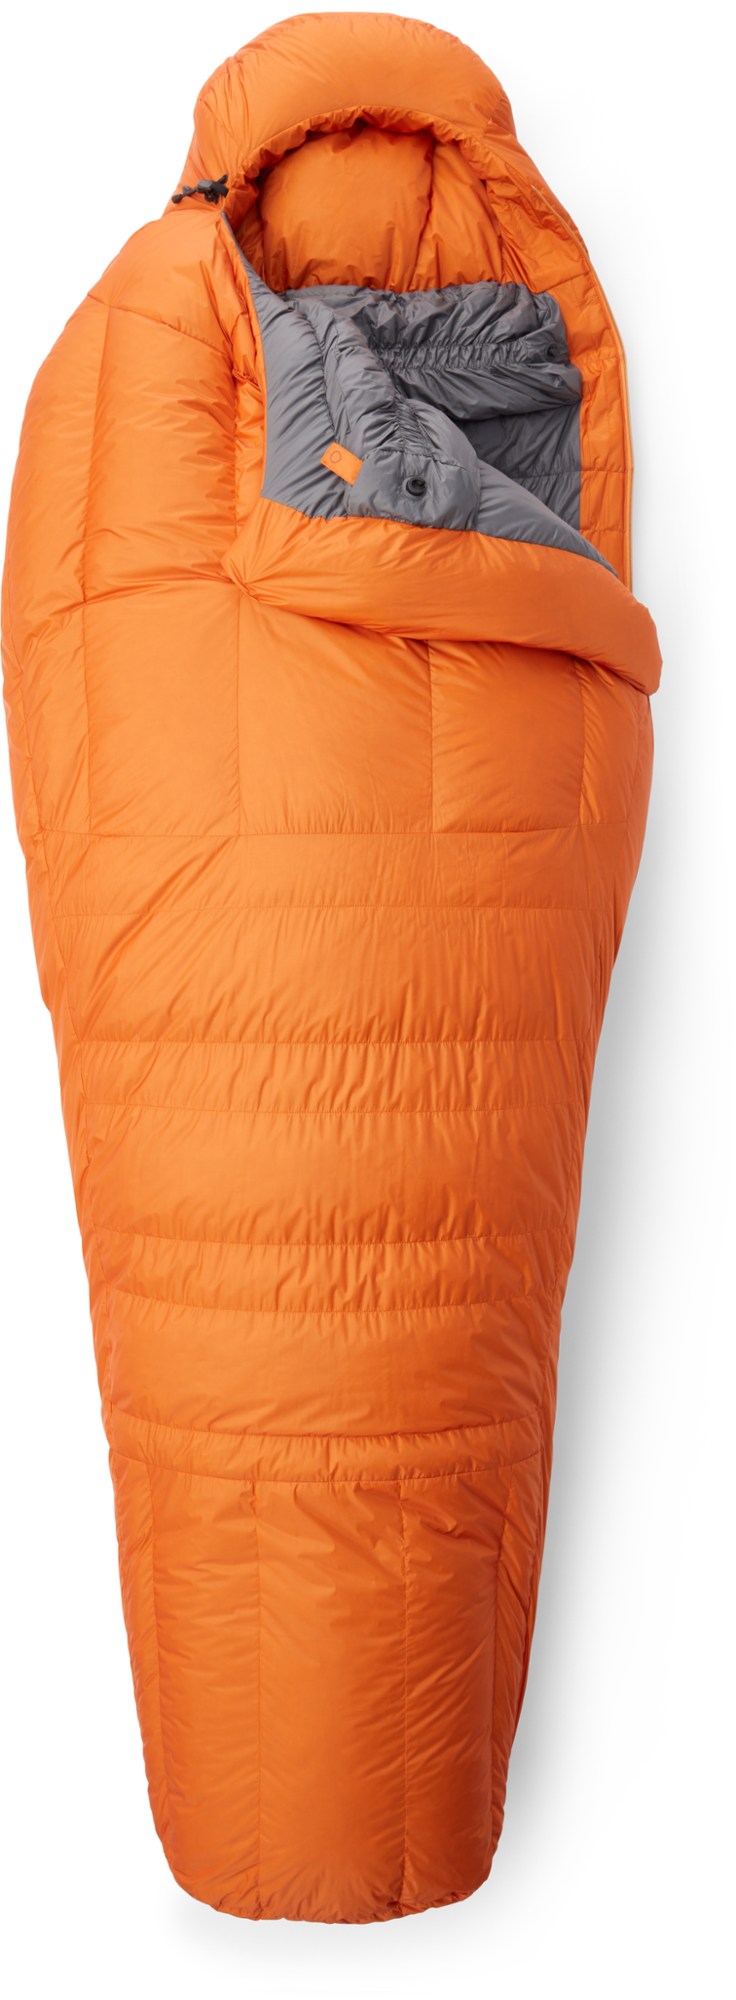 цена Спальный мешок Snowline Mountain Equipment, желтый